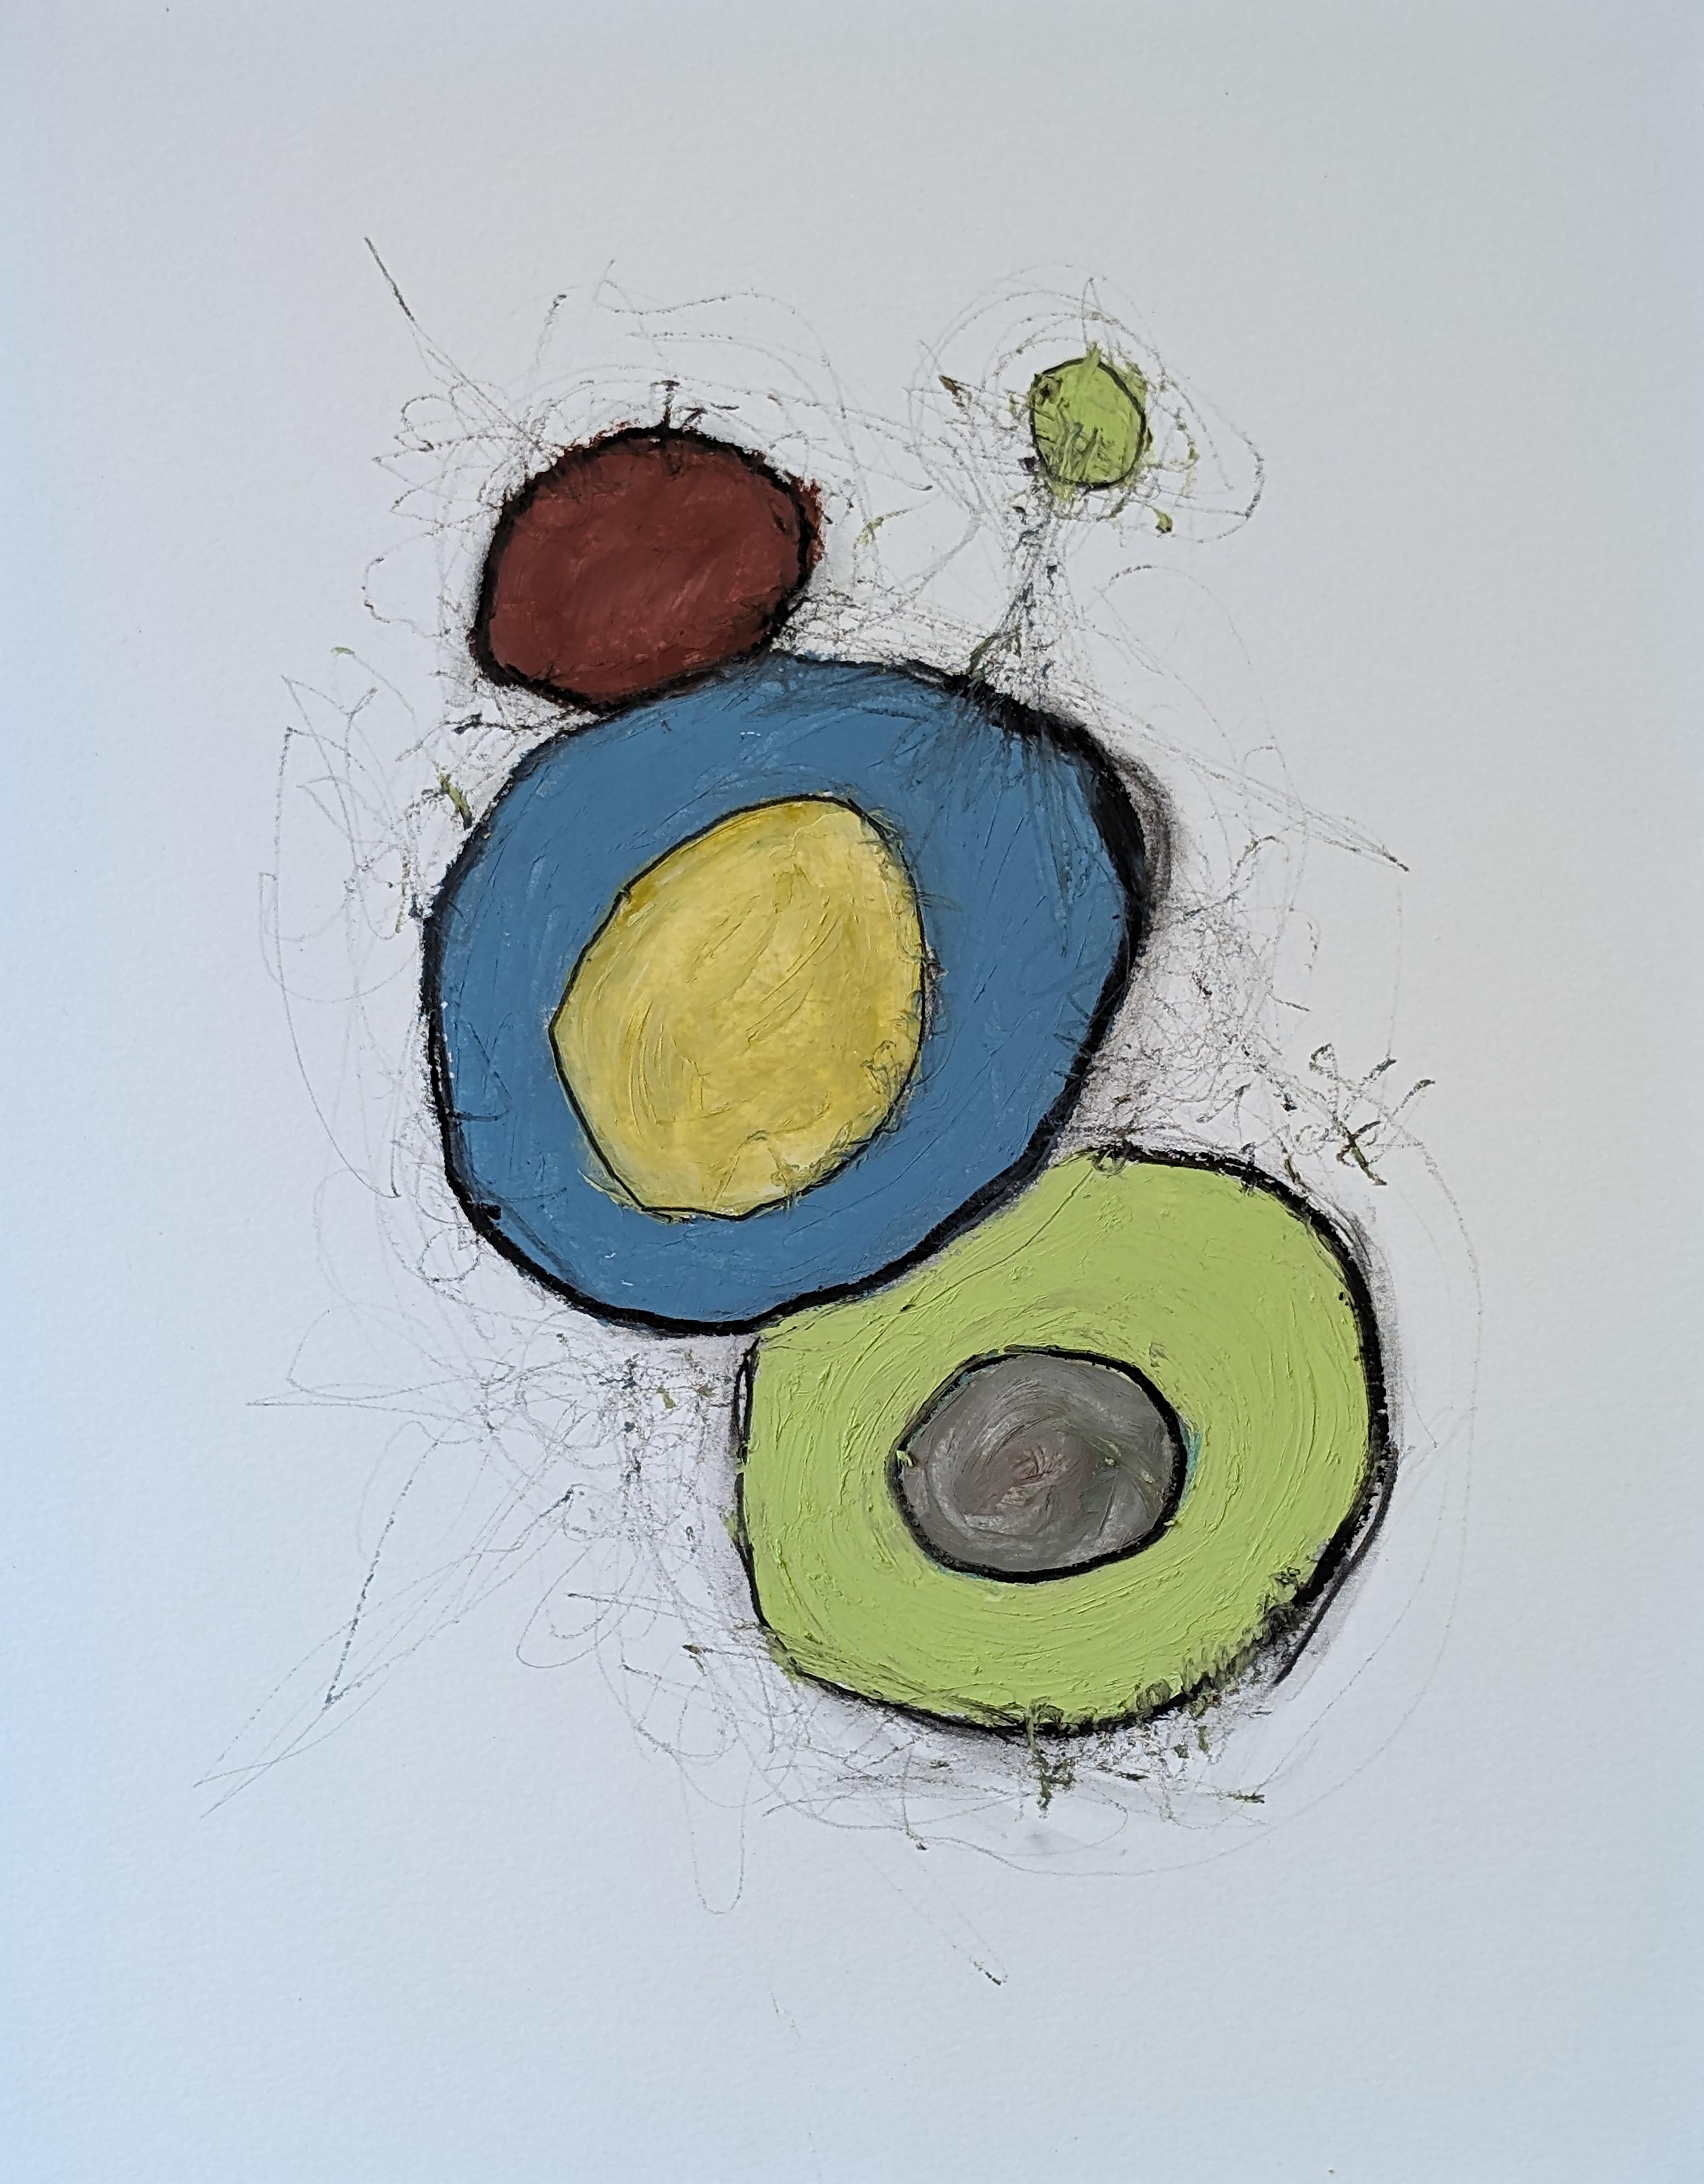 Abstract Drawing Vincent Salvati - "Structures D05" Dessin abstrait contemporain à l'huile sur papier